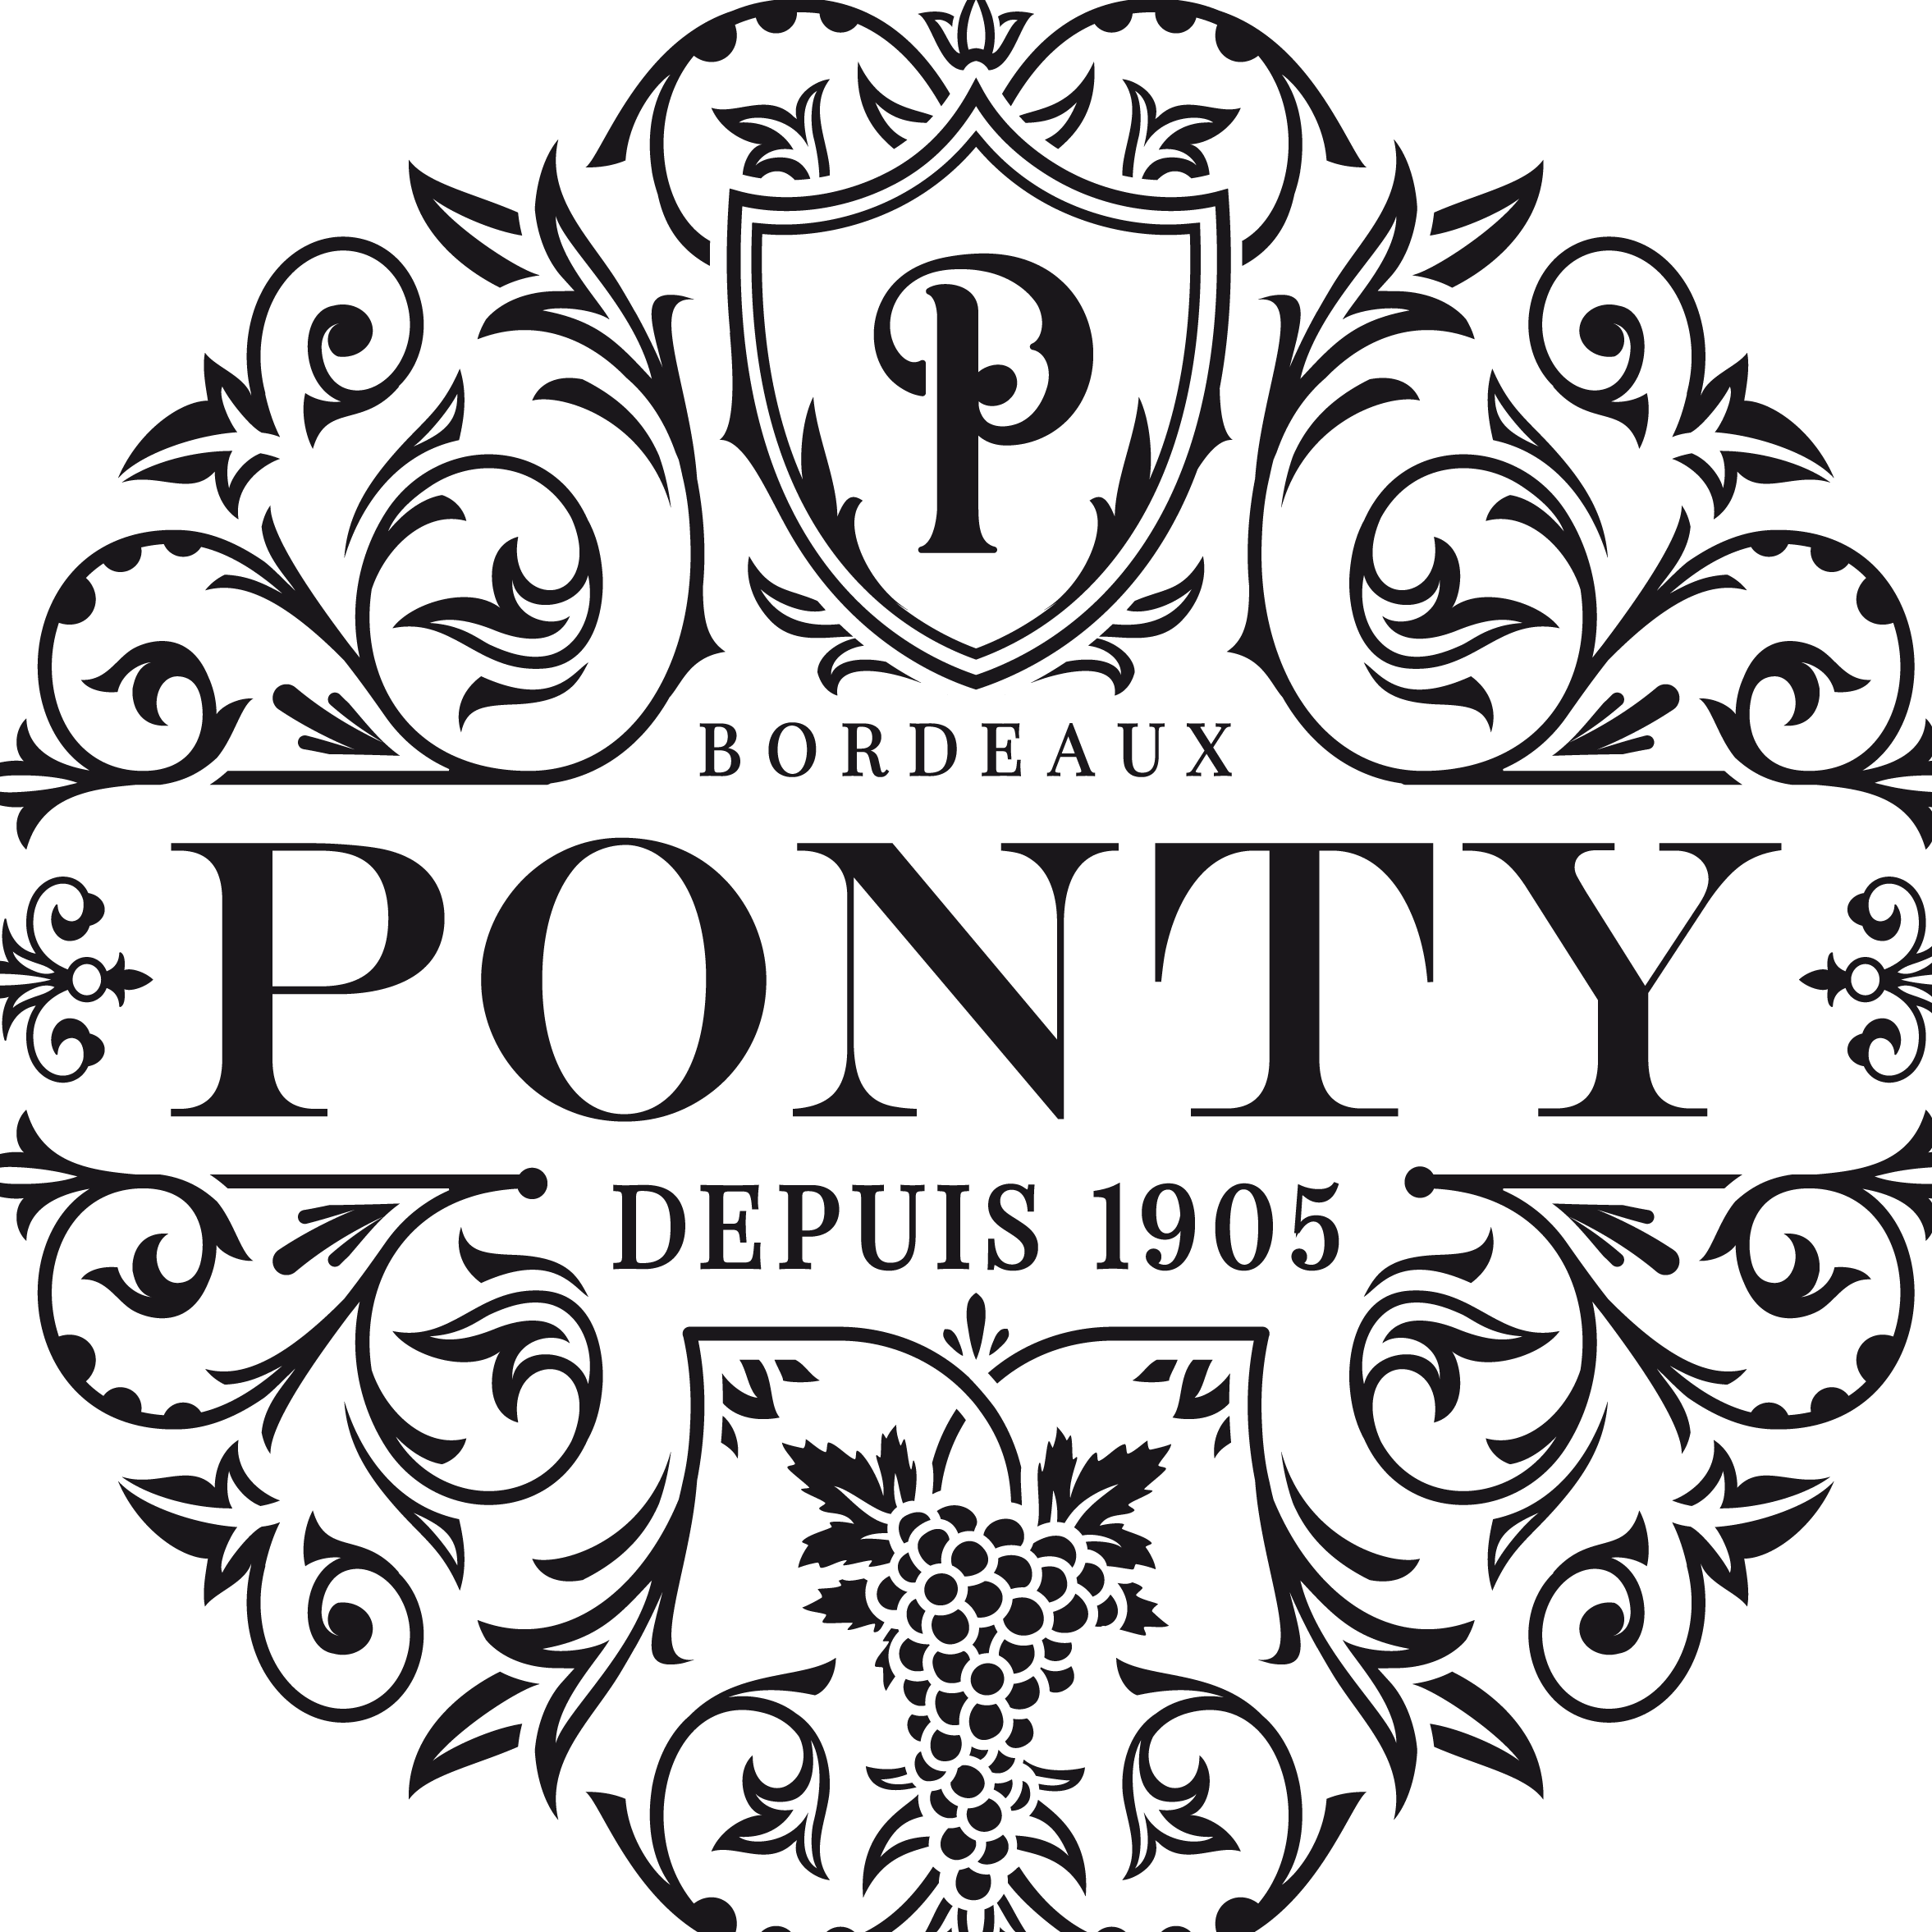 PontyWinery康廷酒庄